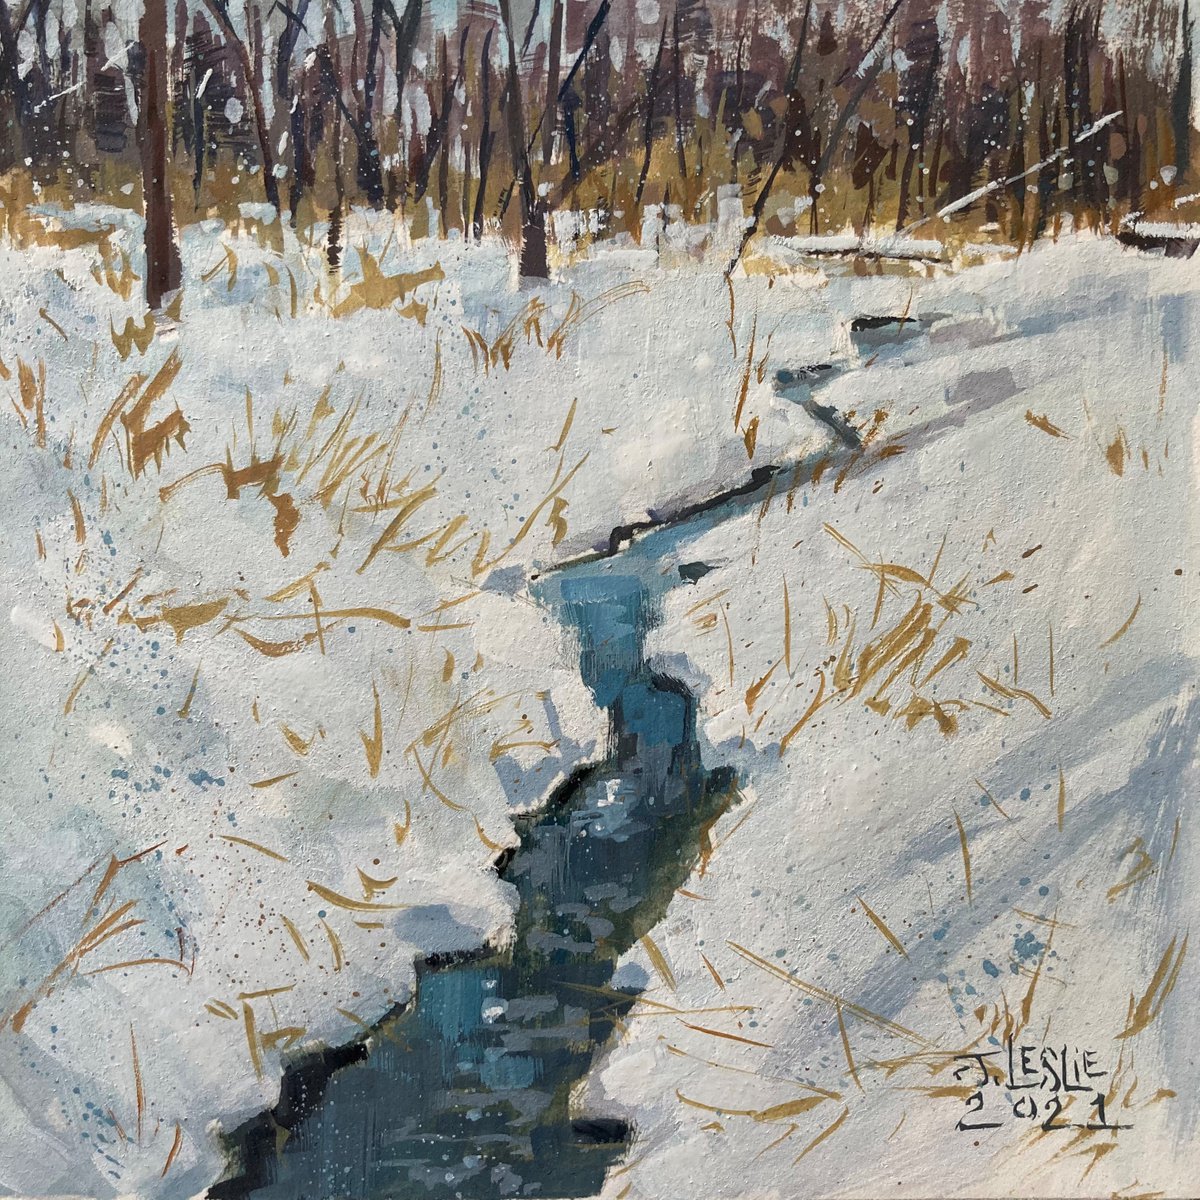 Gray, Creek on Parker Street by Jimmy Leslie